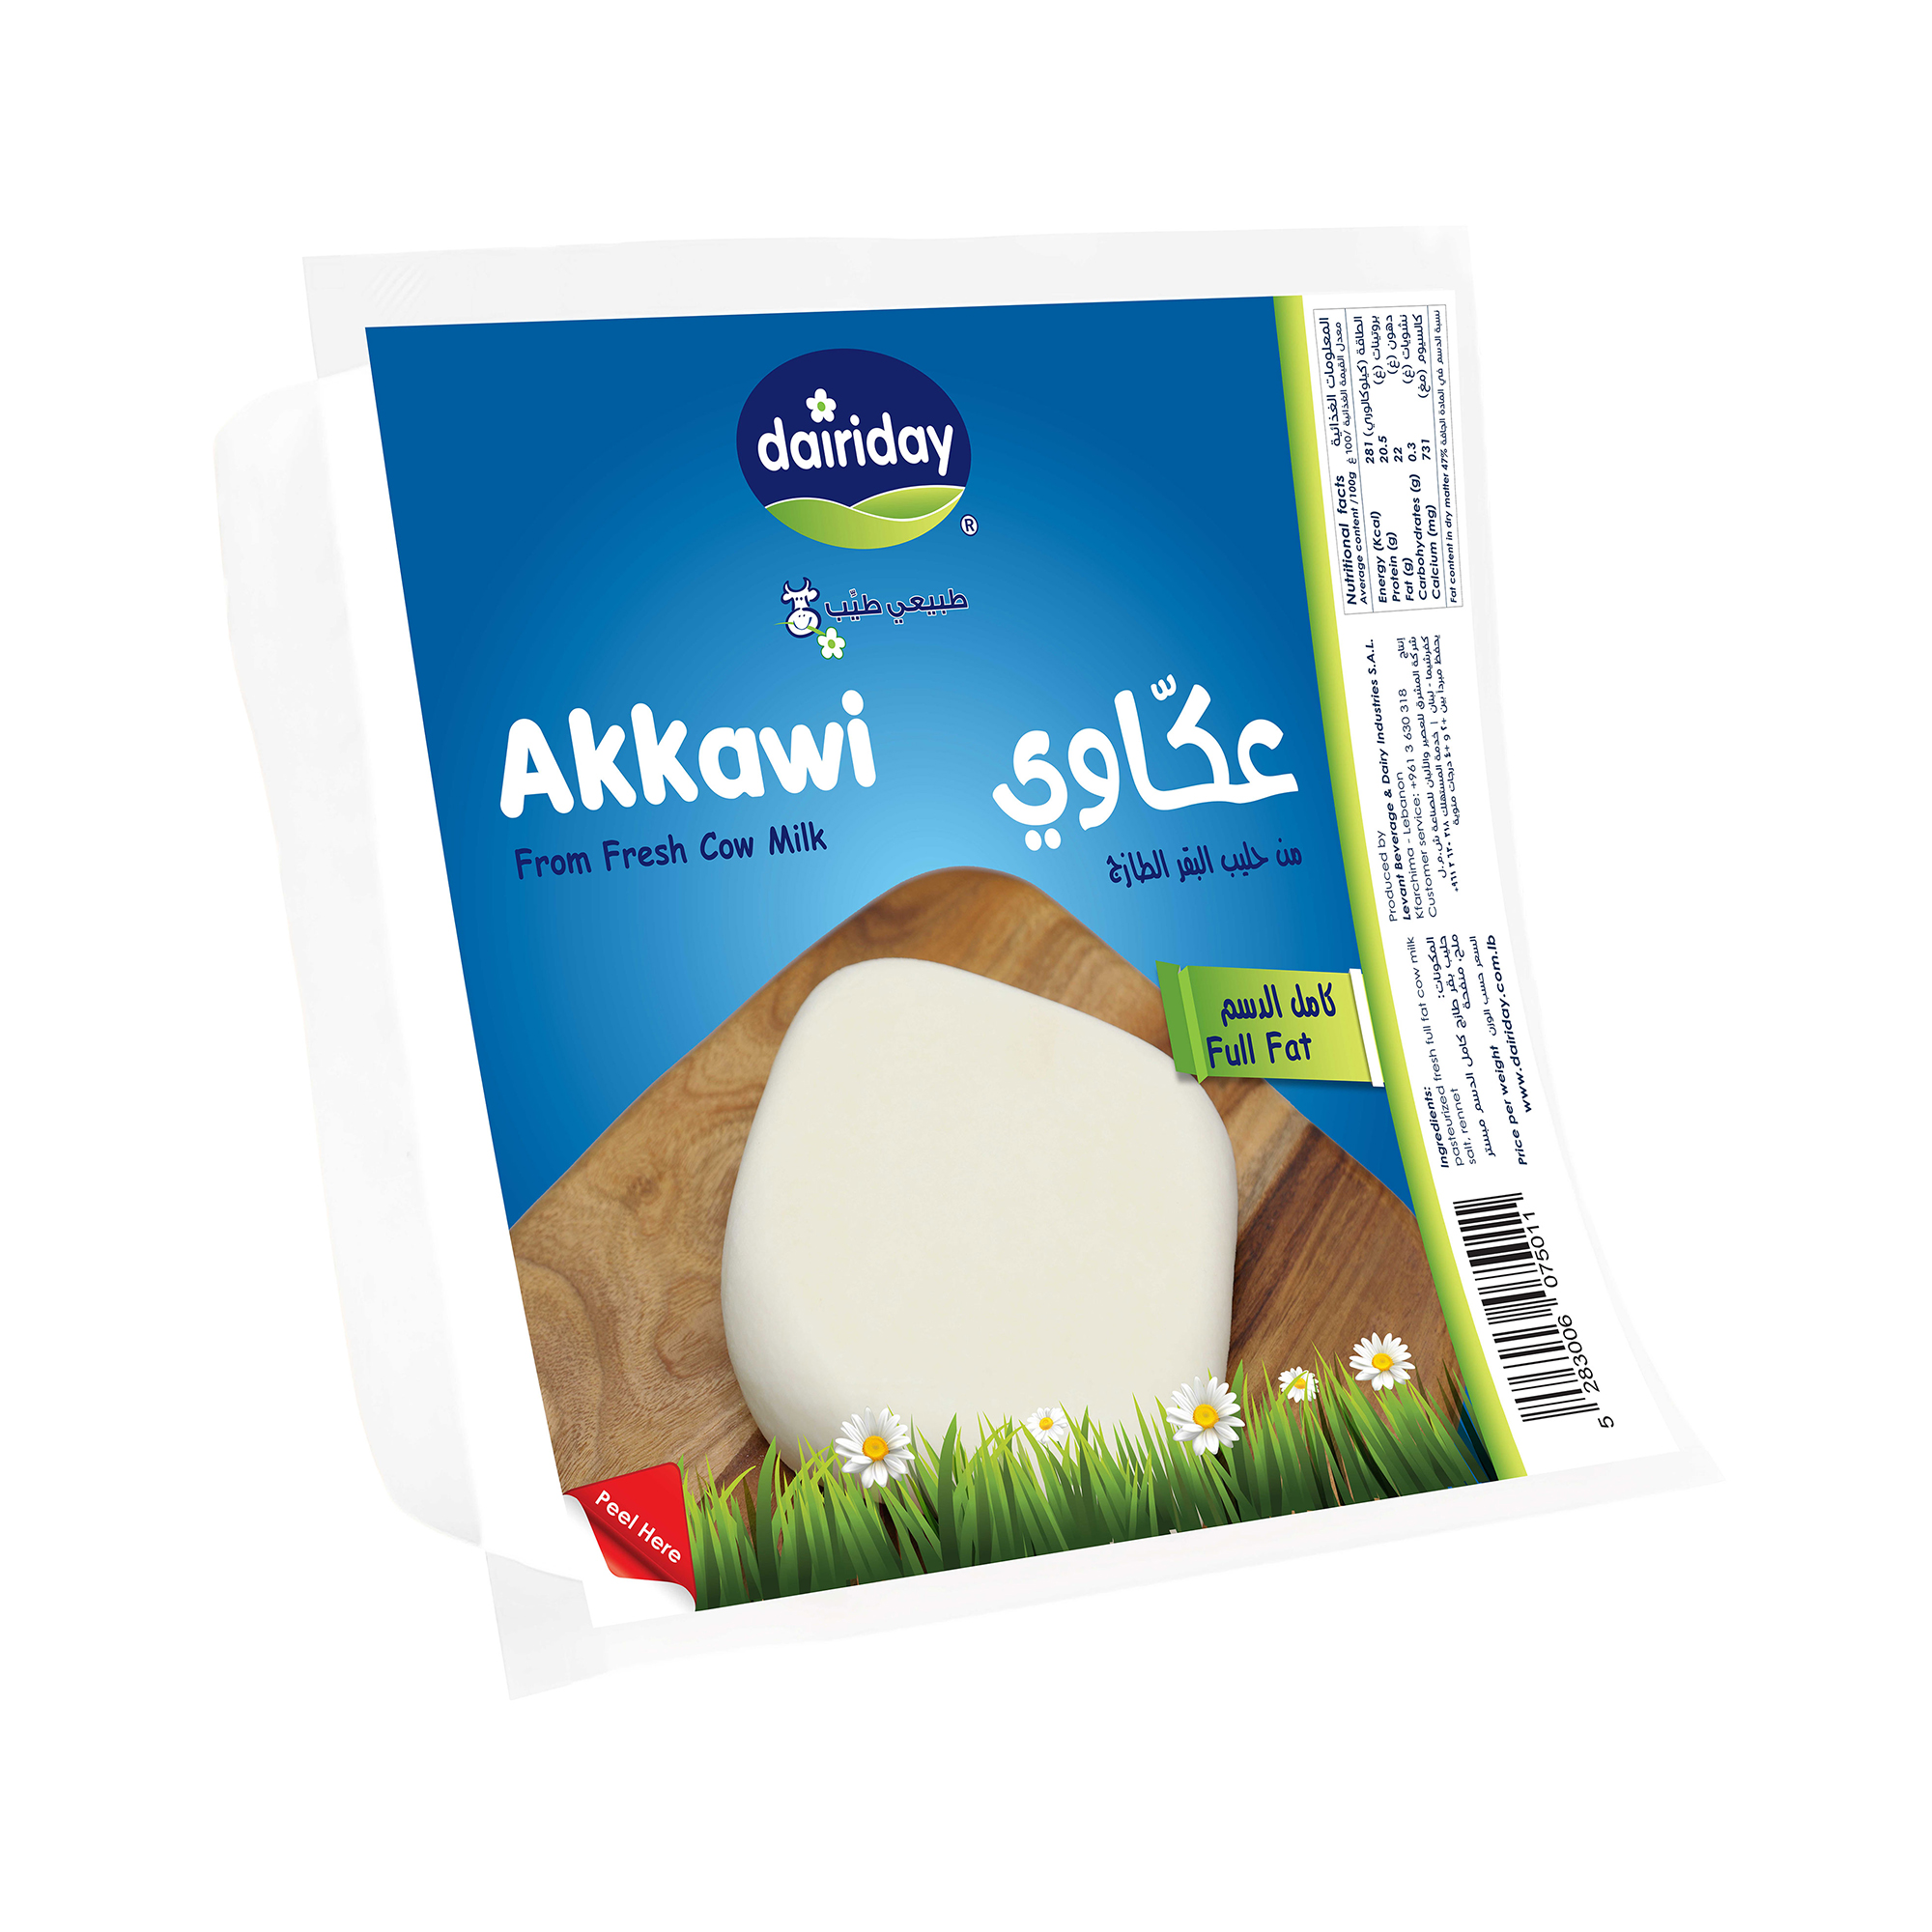 Dairiday-Akkawi-FF-white-cheese